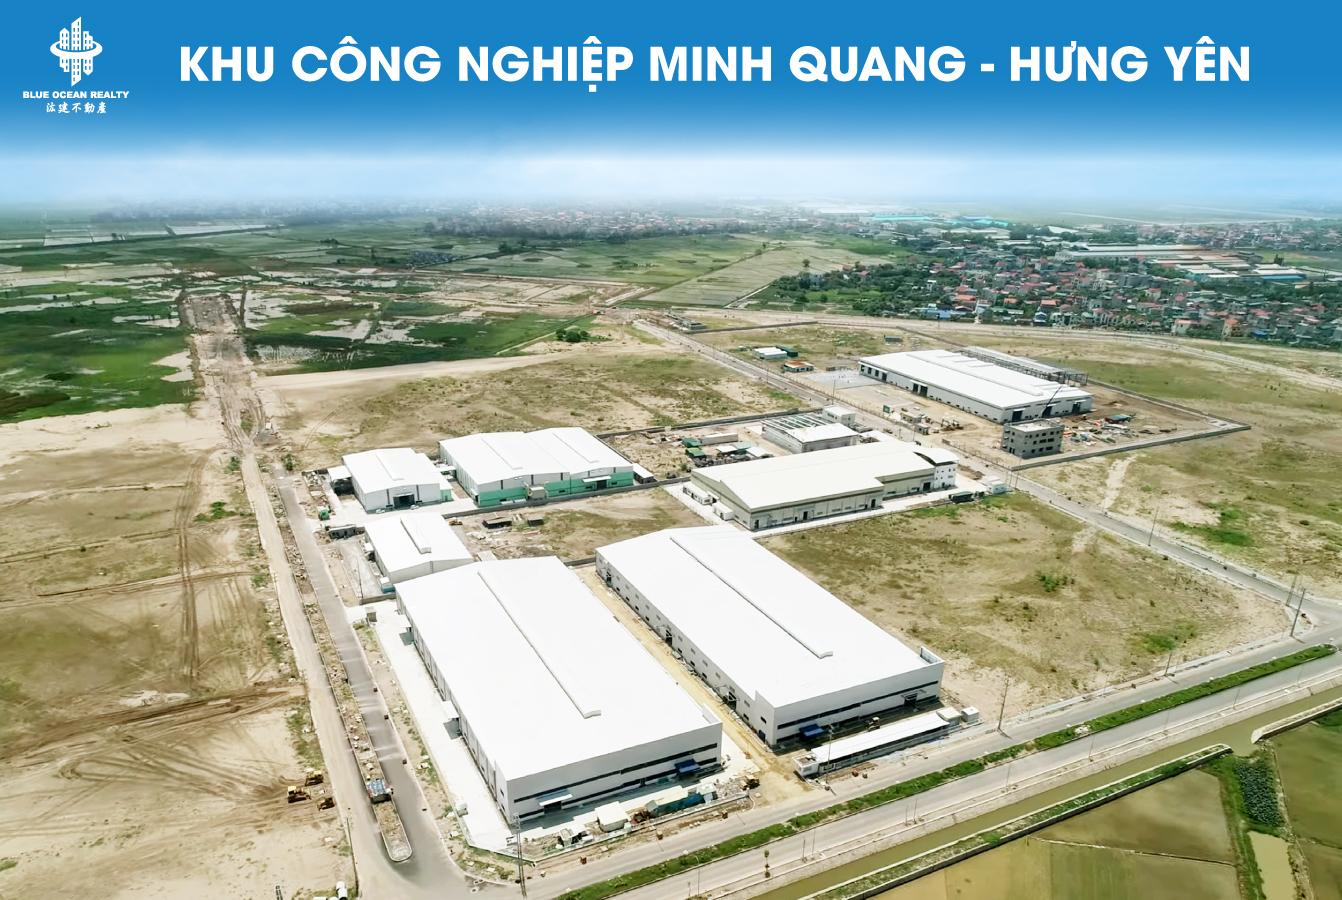 Khu công nghiệp (KCN) Minh Quang- Hưng Yên